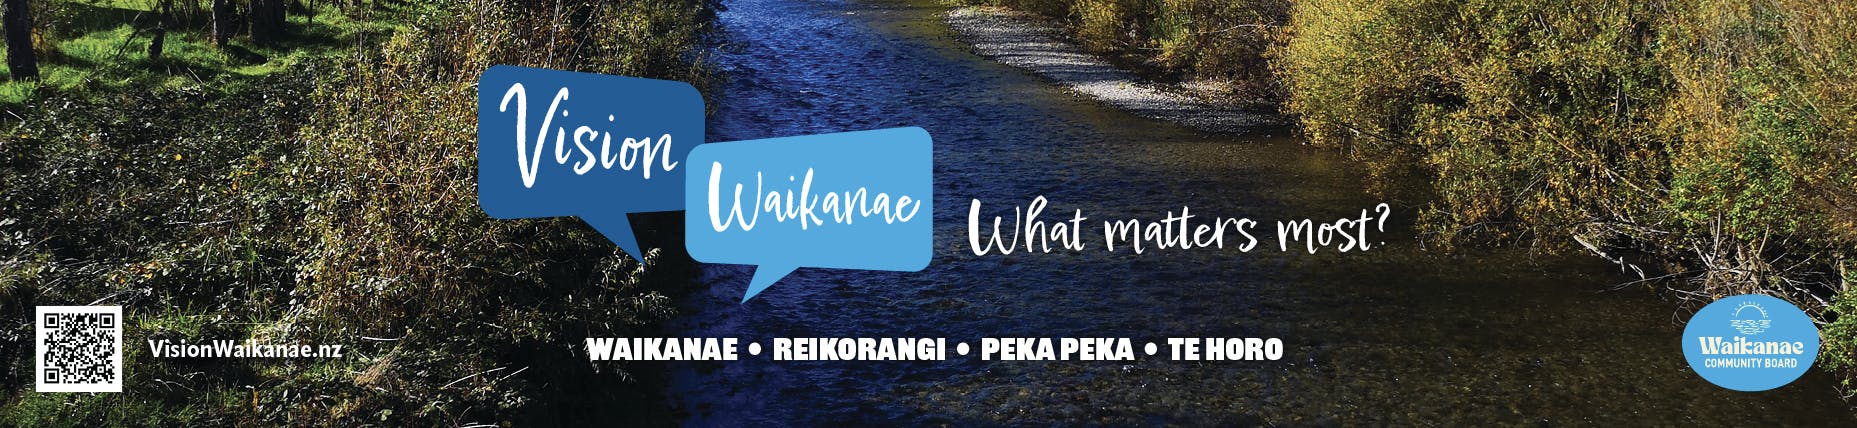 Vision Waikanae